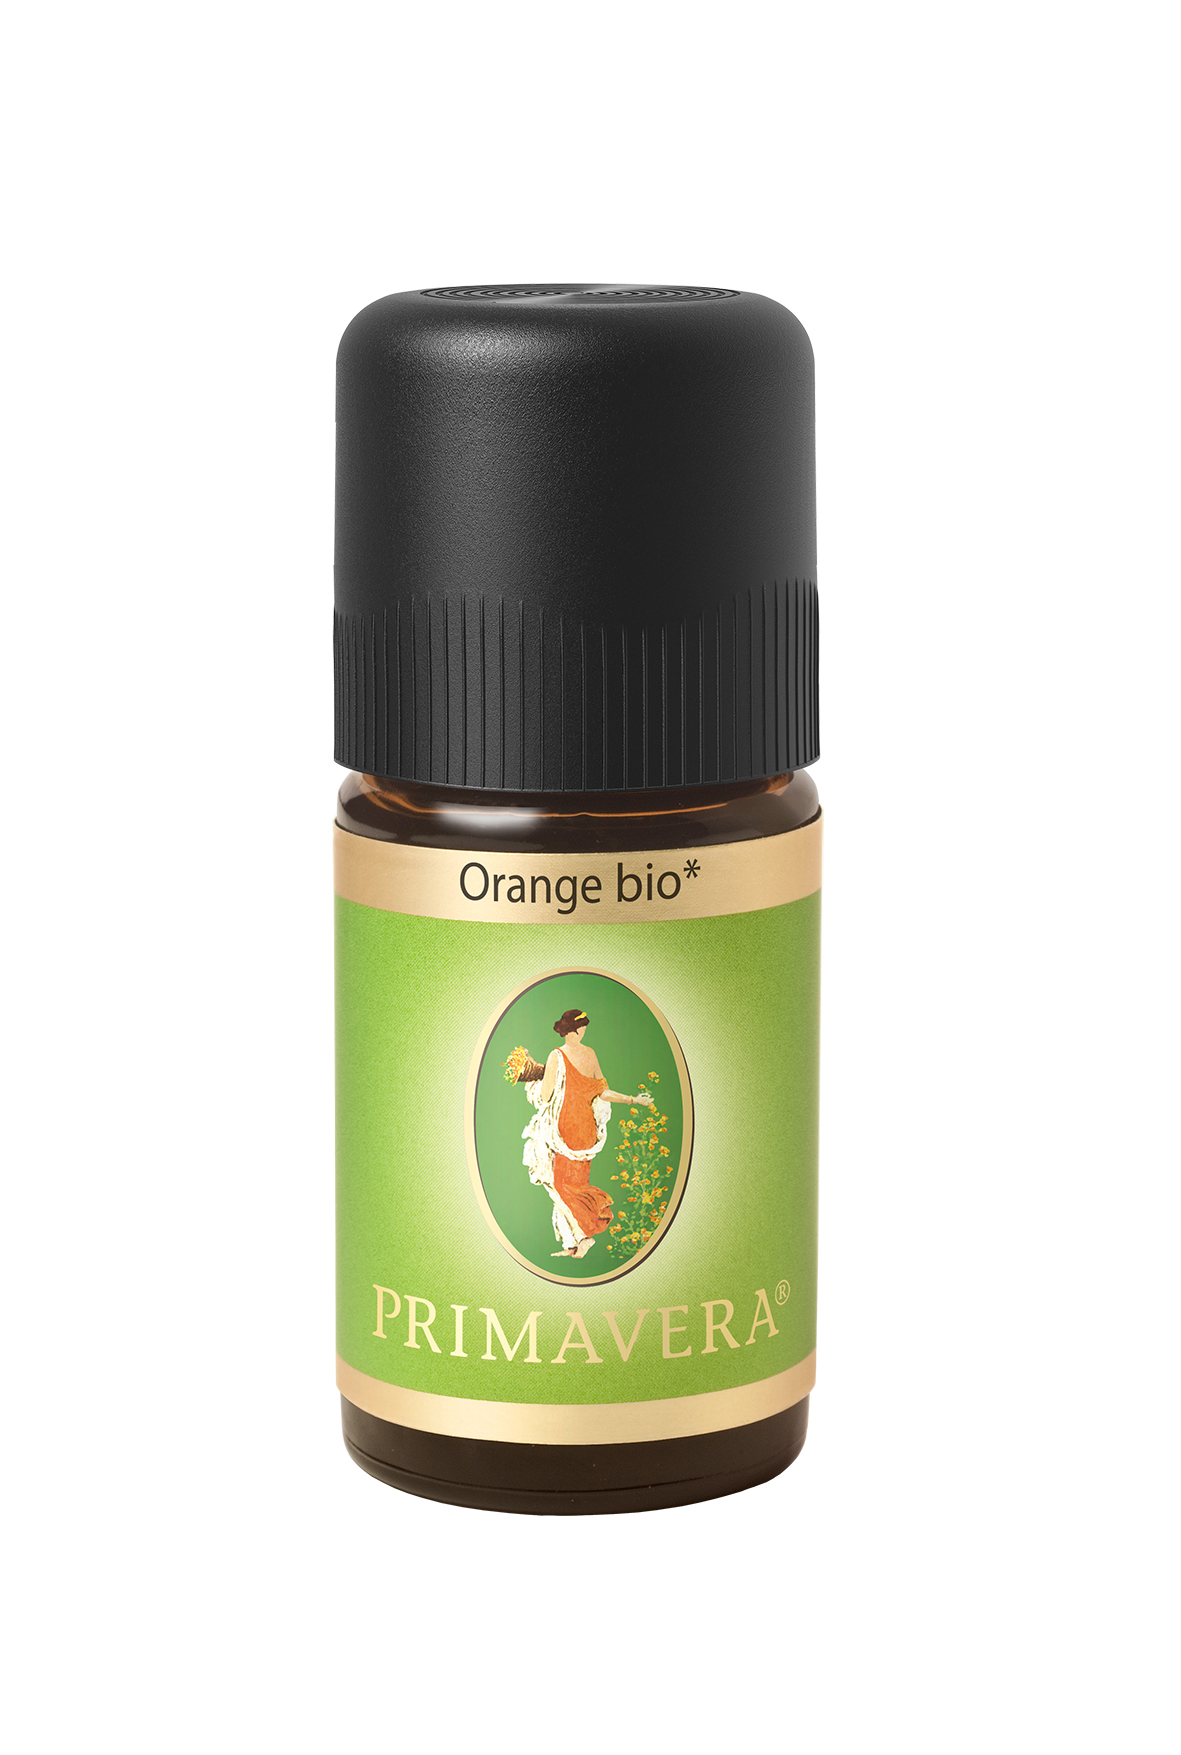 Primavera® Ätherisches Öl, Orange bio